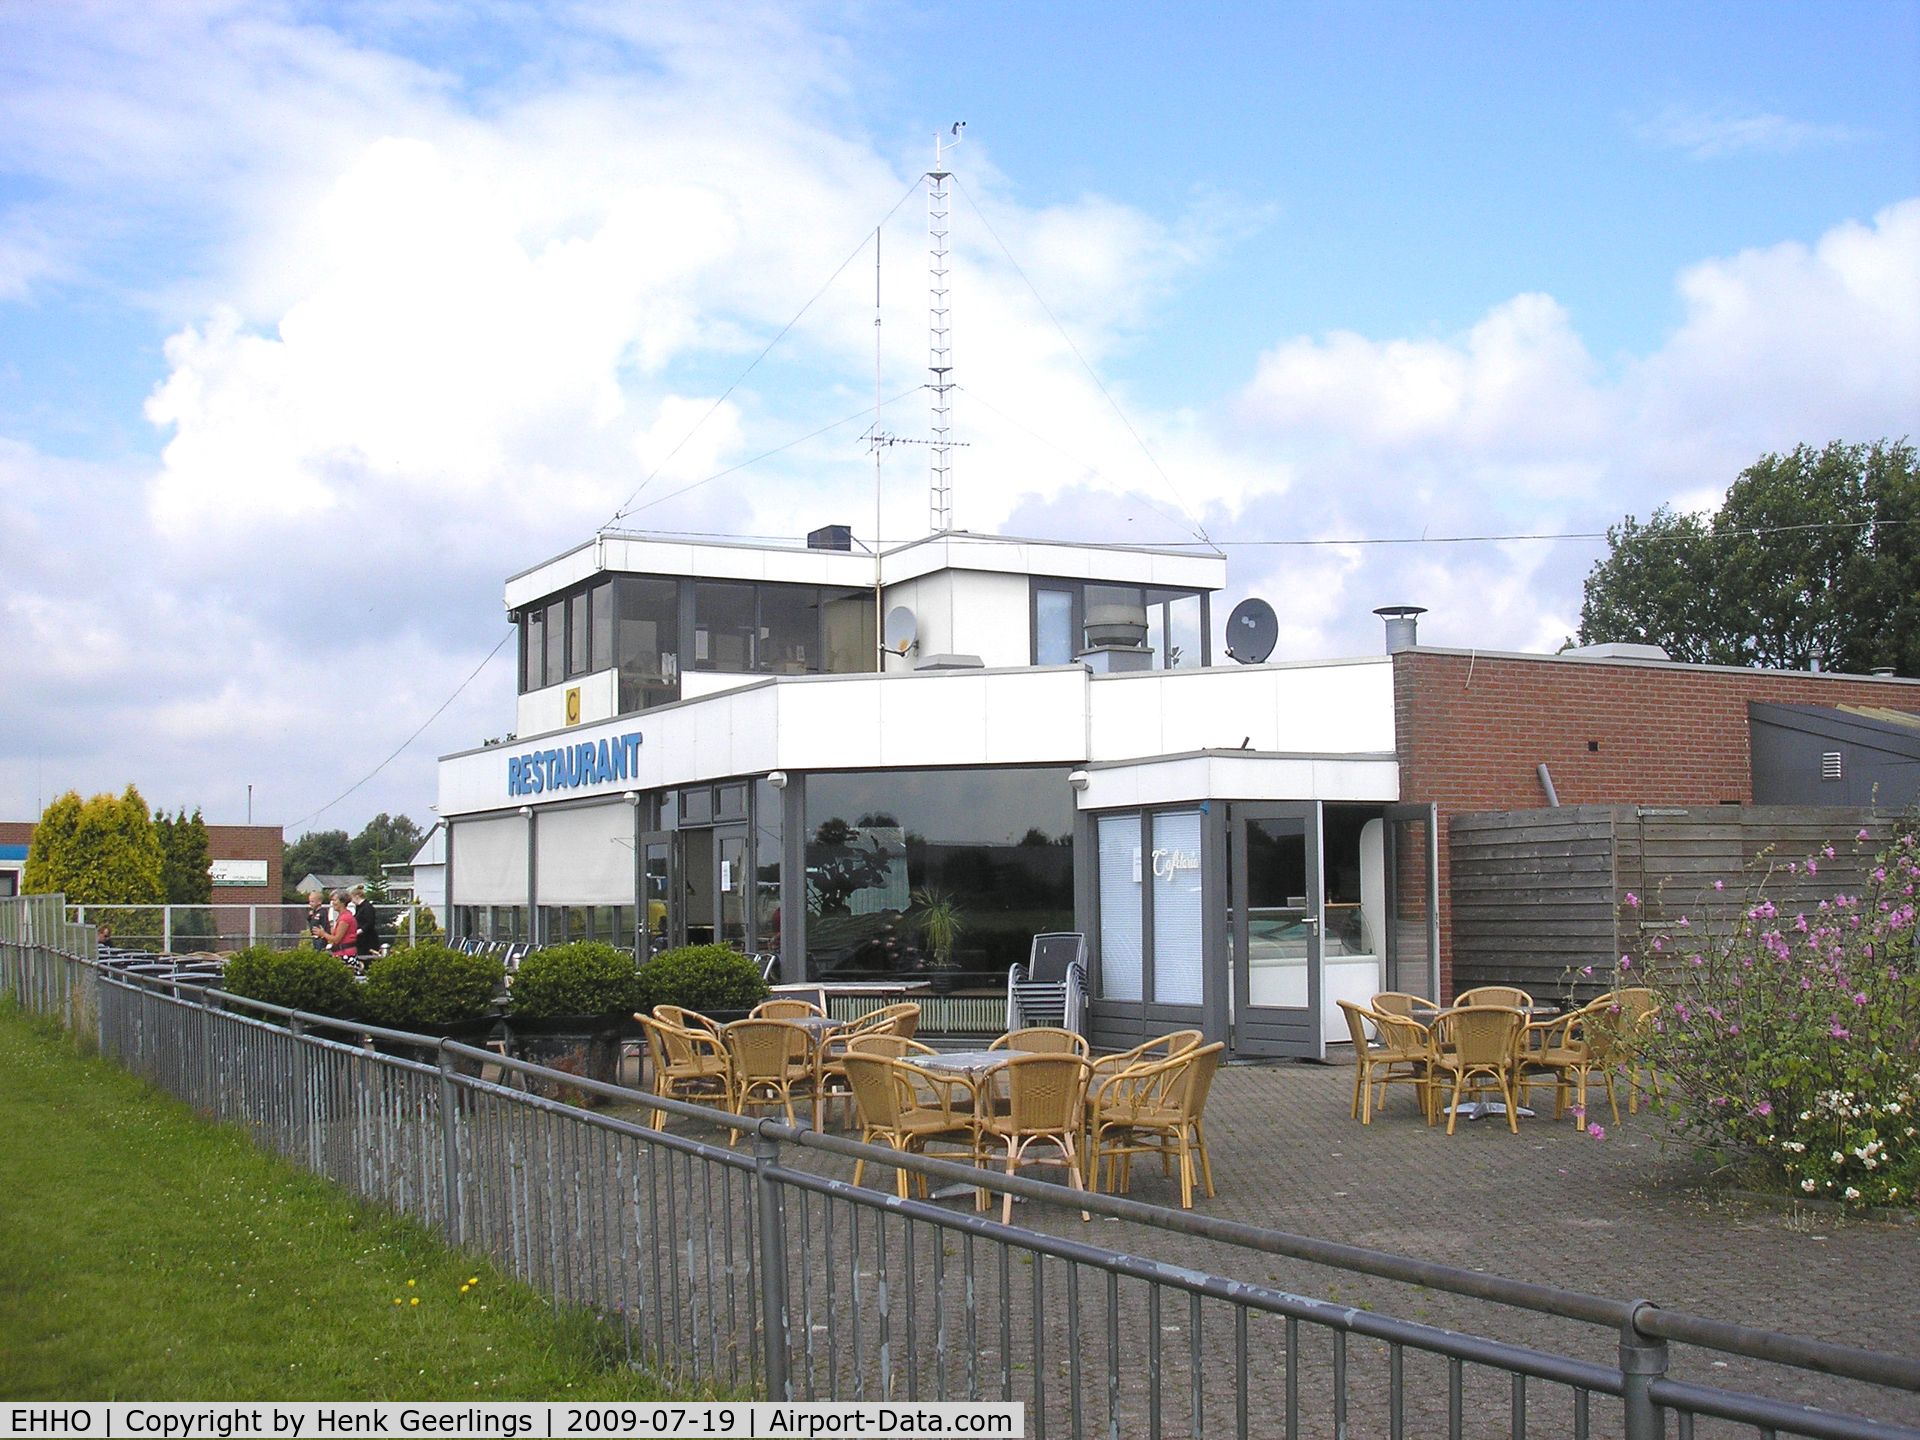 Hoogeveen Airfield Airport, Hoogeveen Netherlands (EHHO) - Hoogeveen Aerodrome - The Netherlands